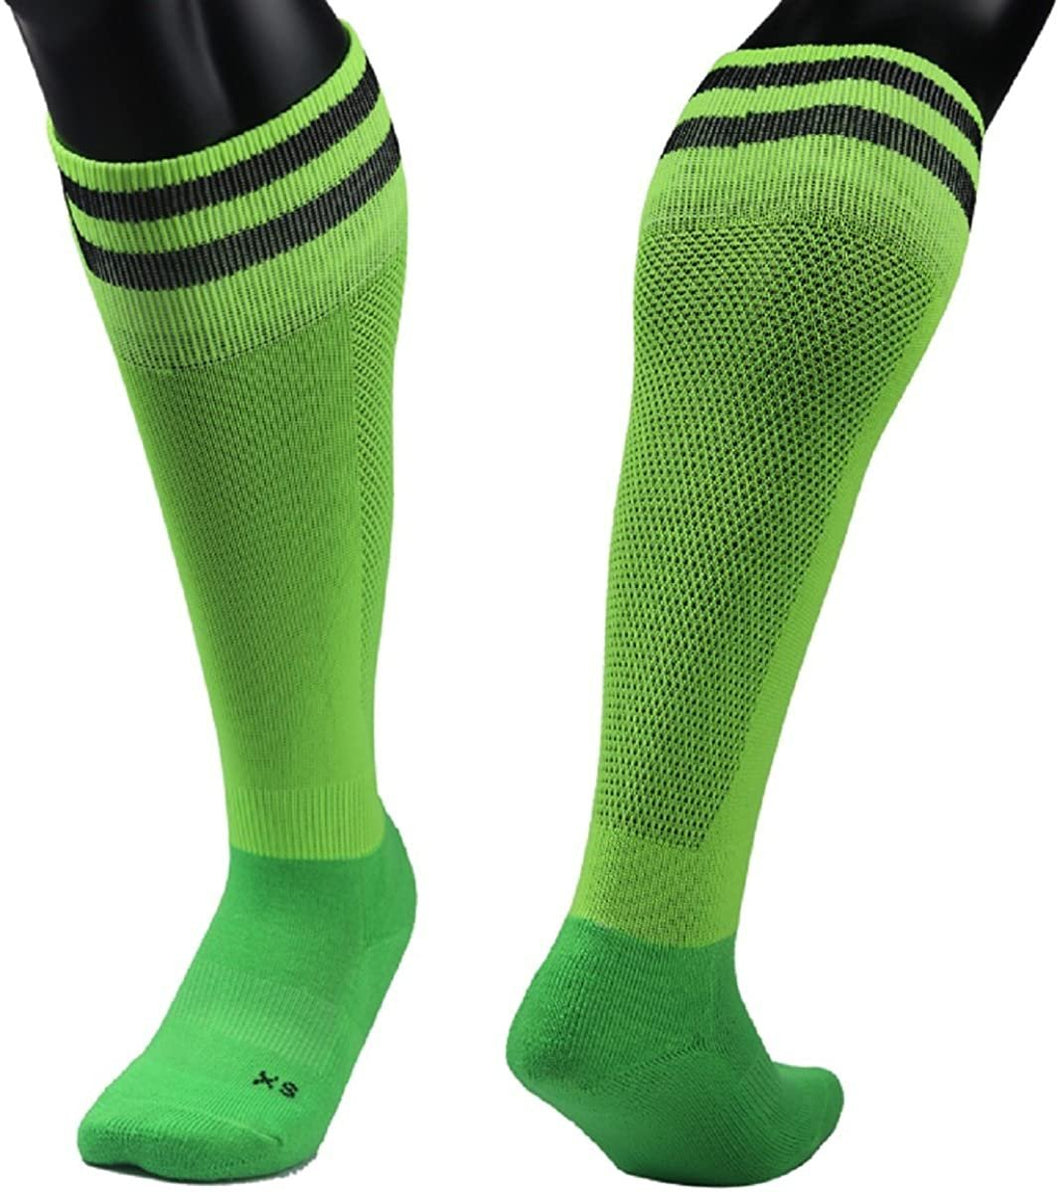 Lian Style Boys' 1 Pair Knee Length Sports Socks for Baseball/Soccer/Lacrosse XL003 S(Green)